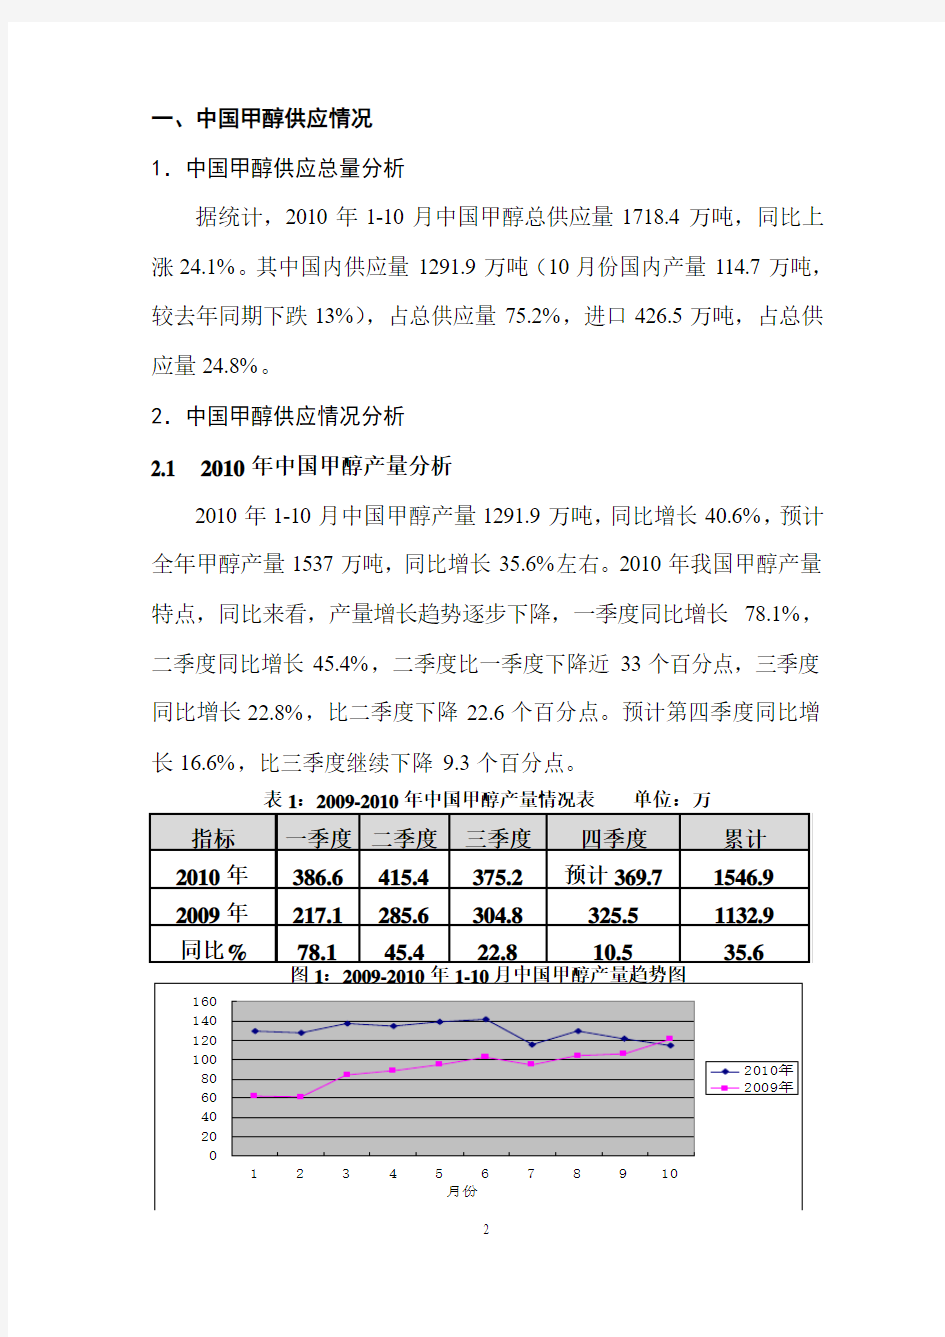 目前中国甲醇市场情况及后期市场走势分析(会议)